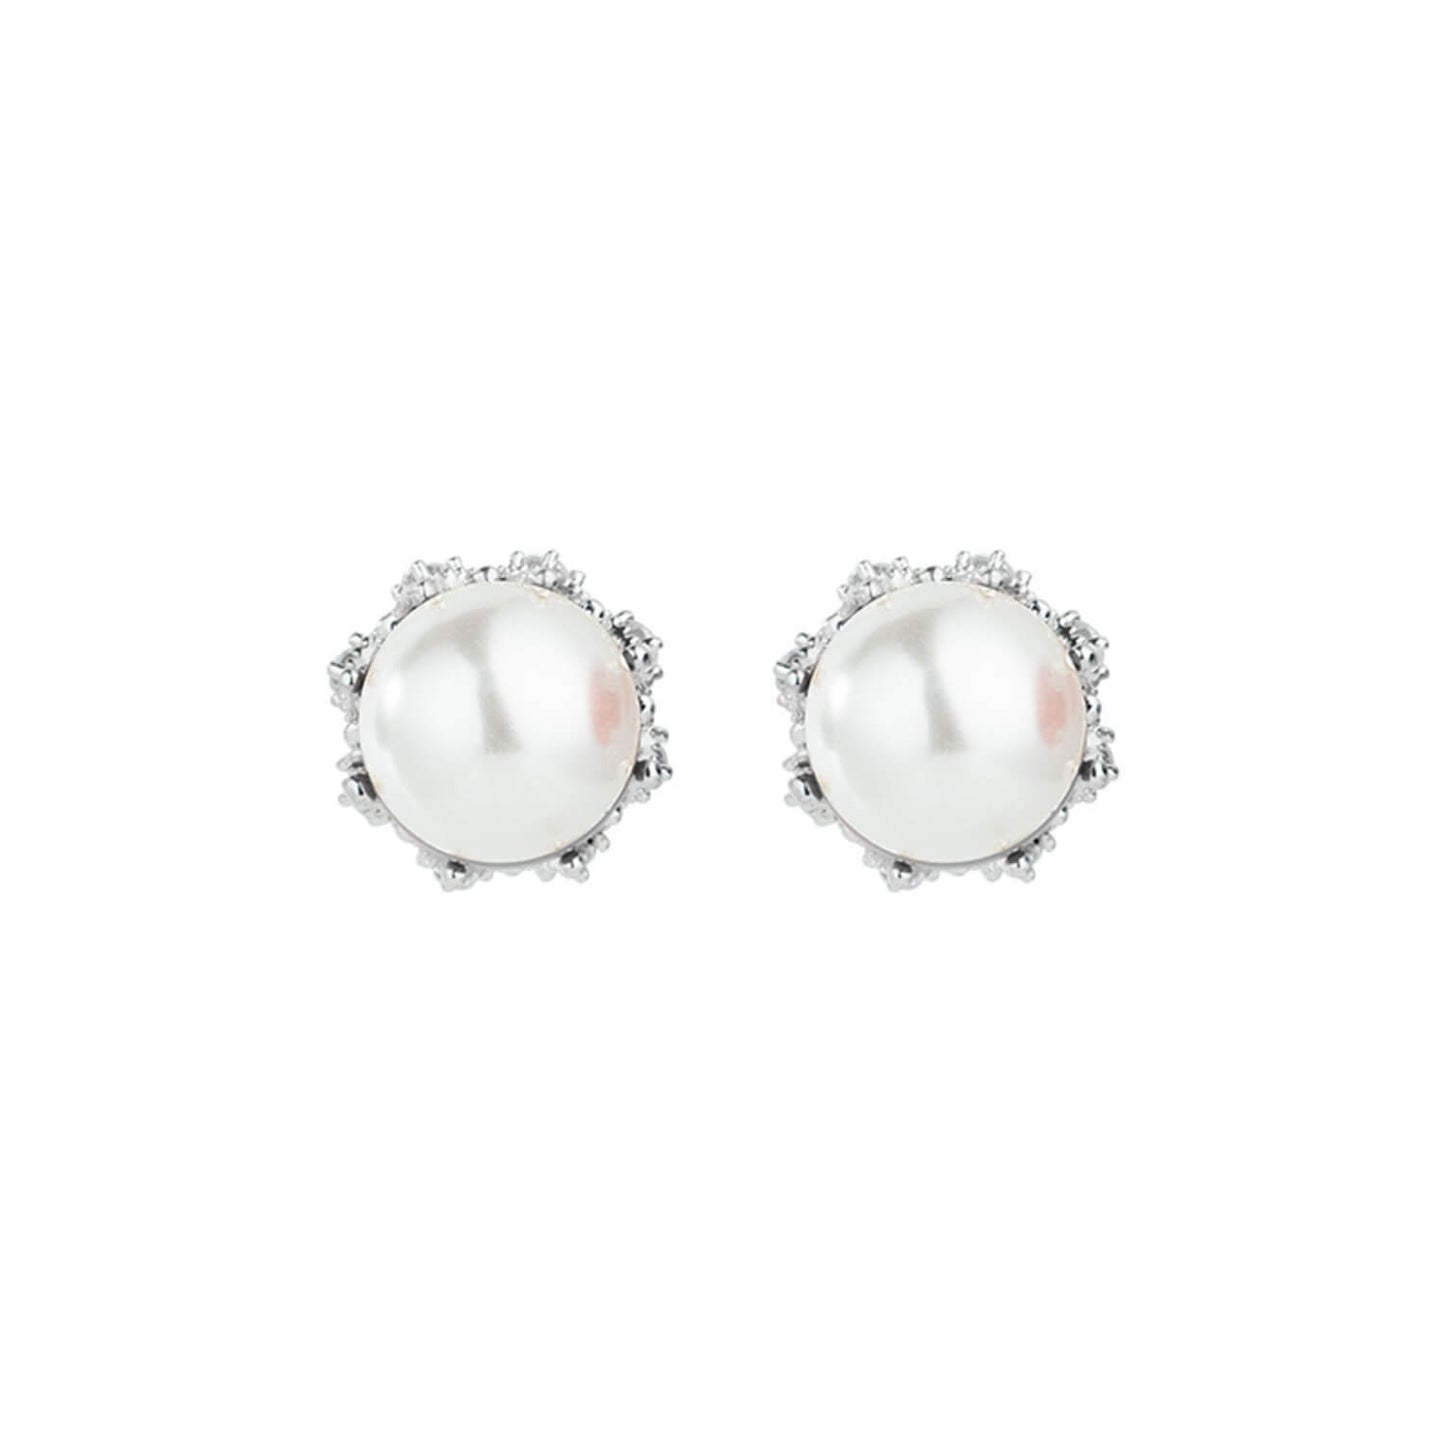 sterling silver double pearl stud earrings